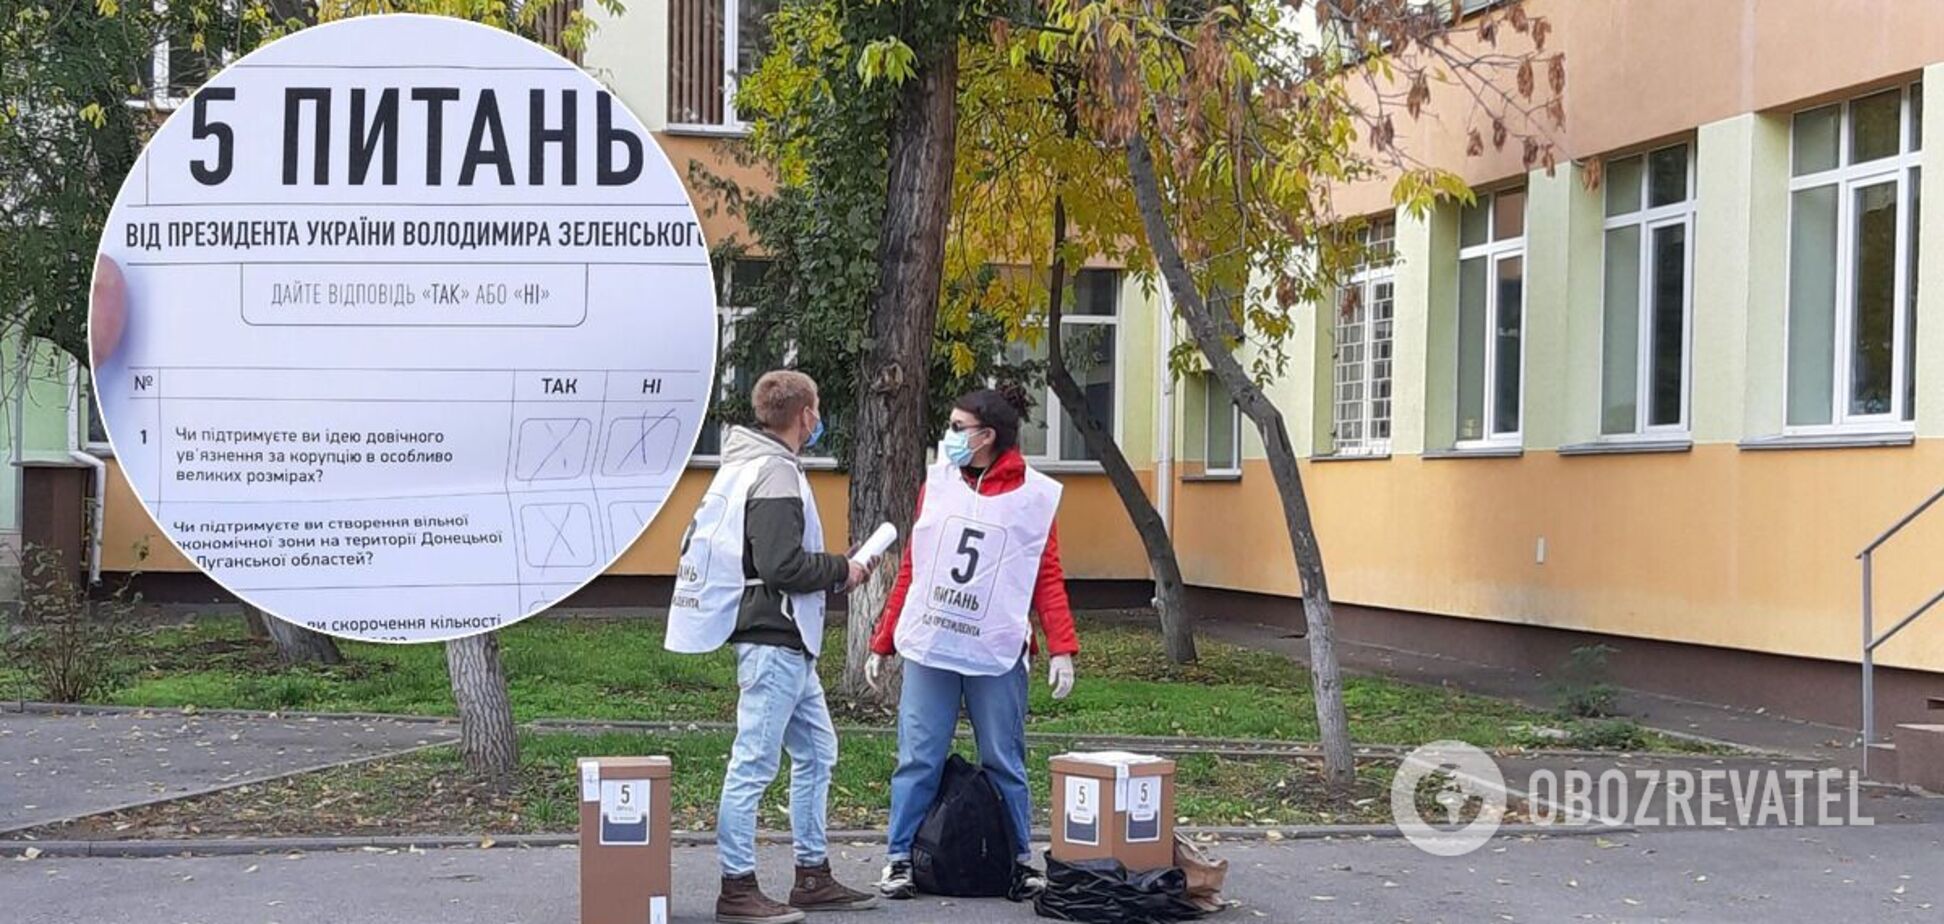 Українці бойкотували, волонтери розгублені: як пройшло опитування Зеленського